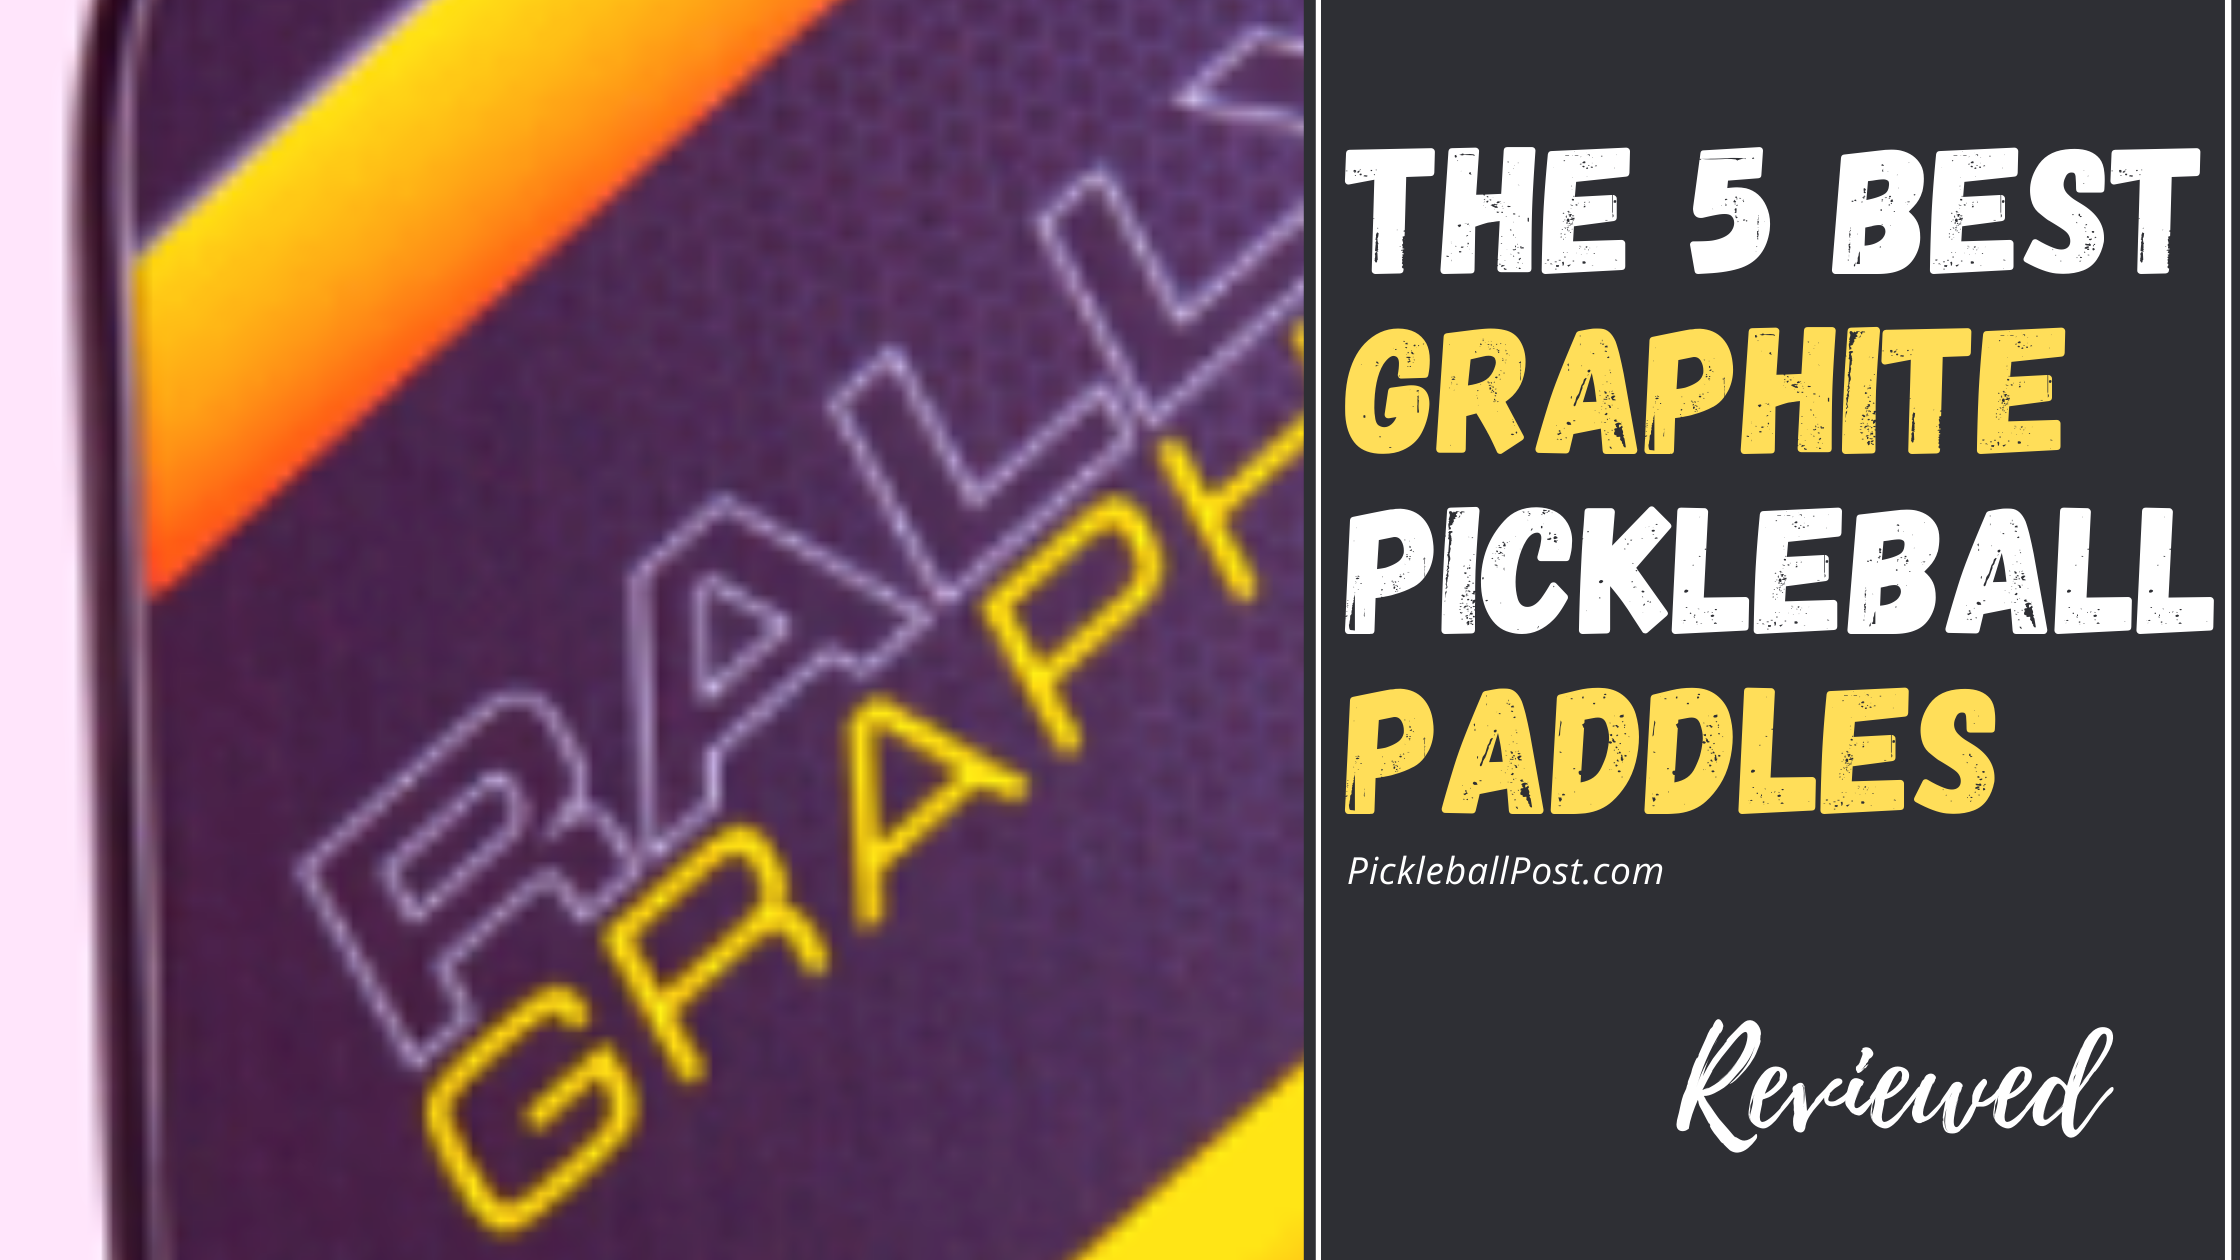 5 Best Graphite Pickleball Paddles